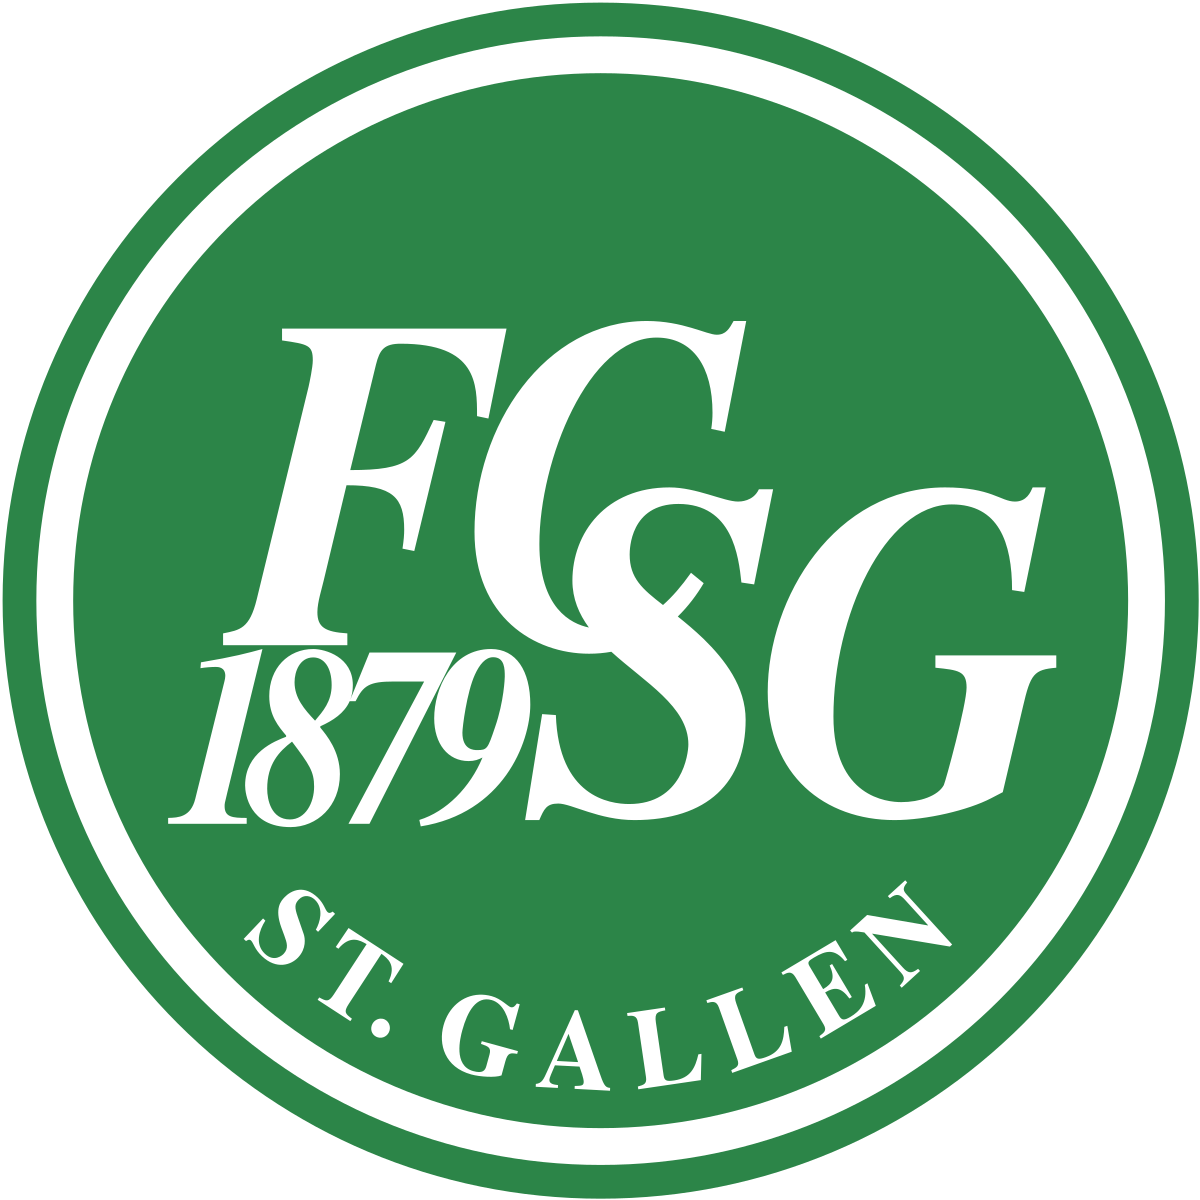 St Gallen Fc